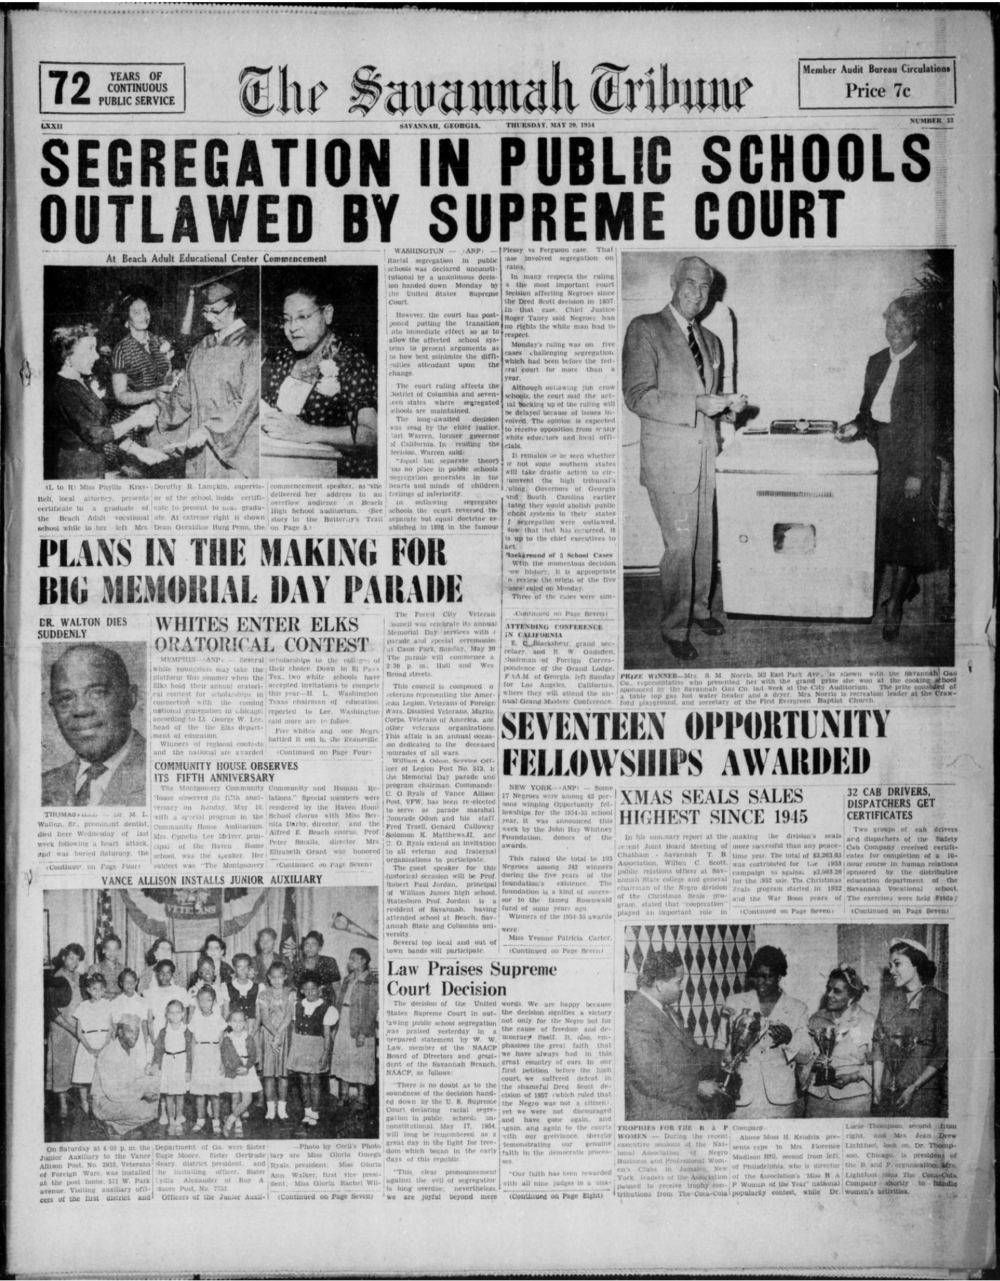 Savannah Tribune front page announcing the Supreme Court decision outlawing school segregation